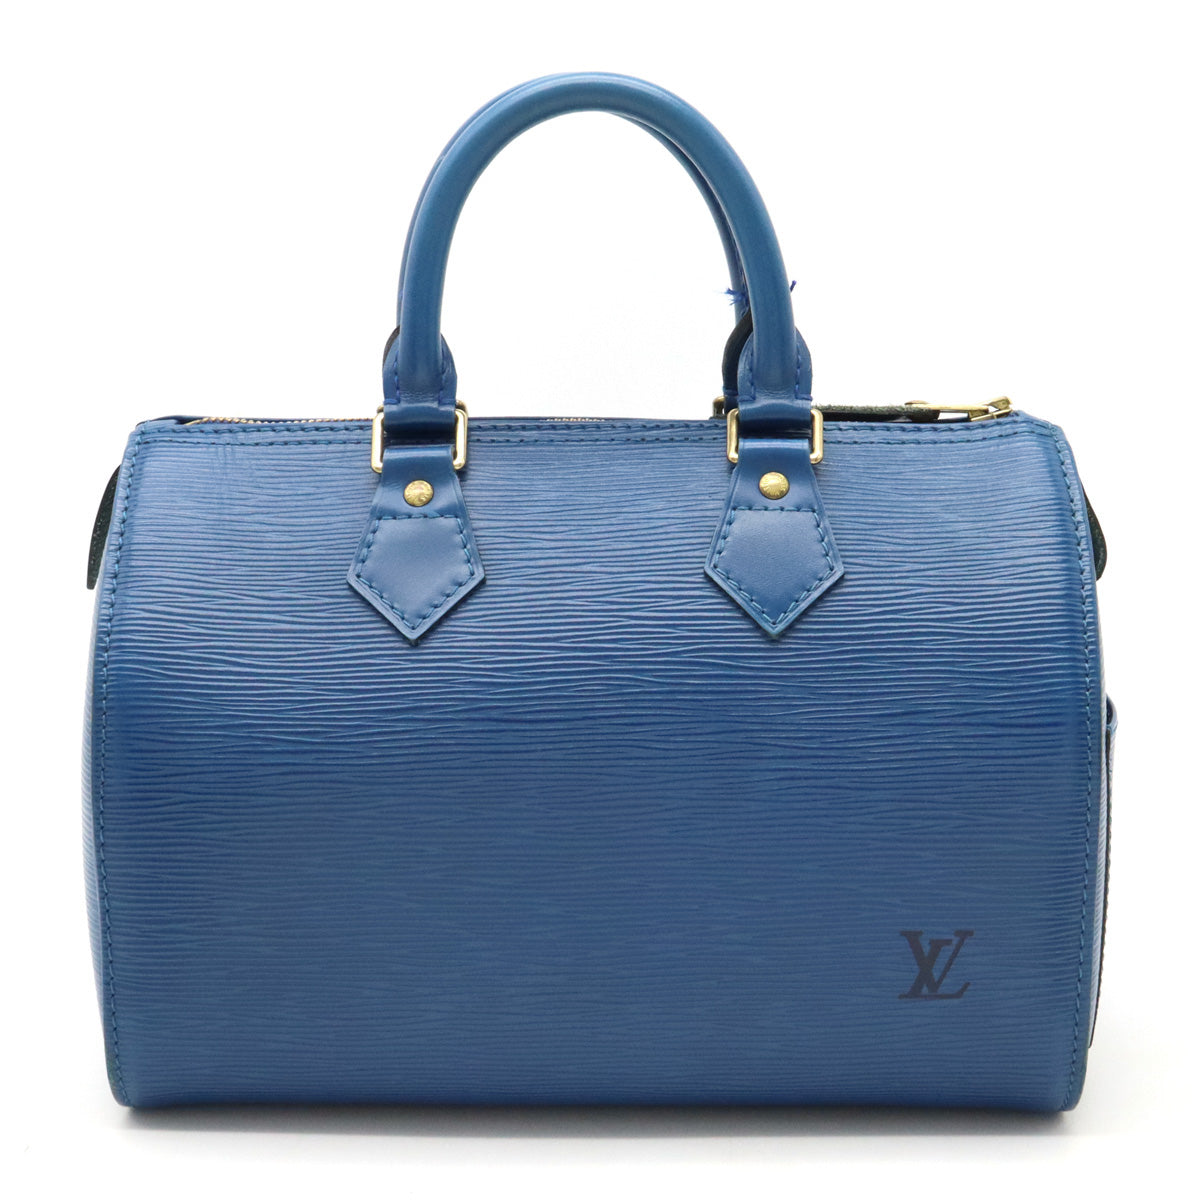 Louis Vuitton Epi Speedy 25 Toledo Bleu M43015